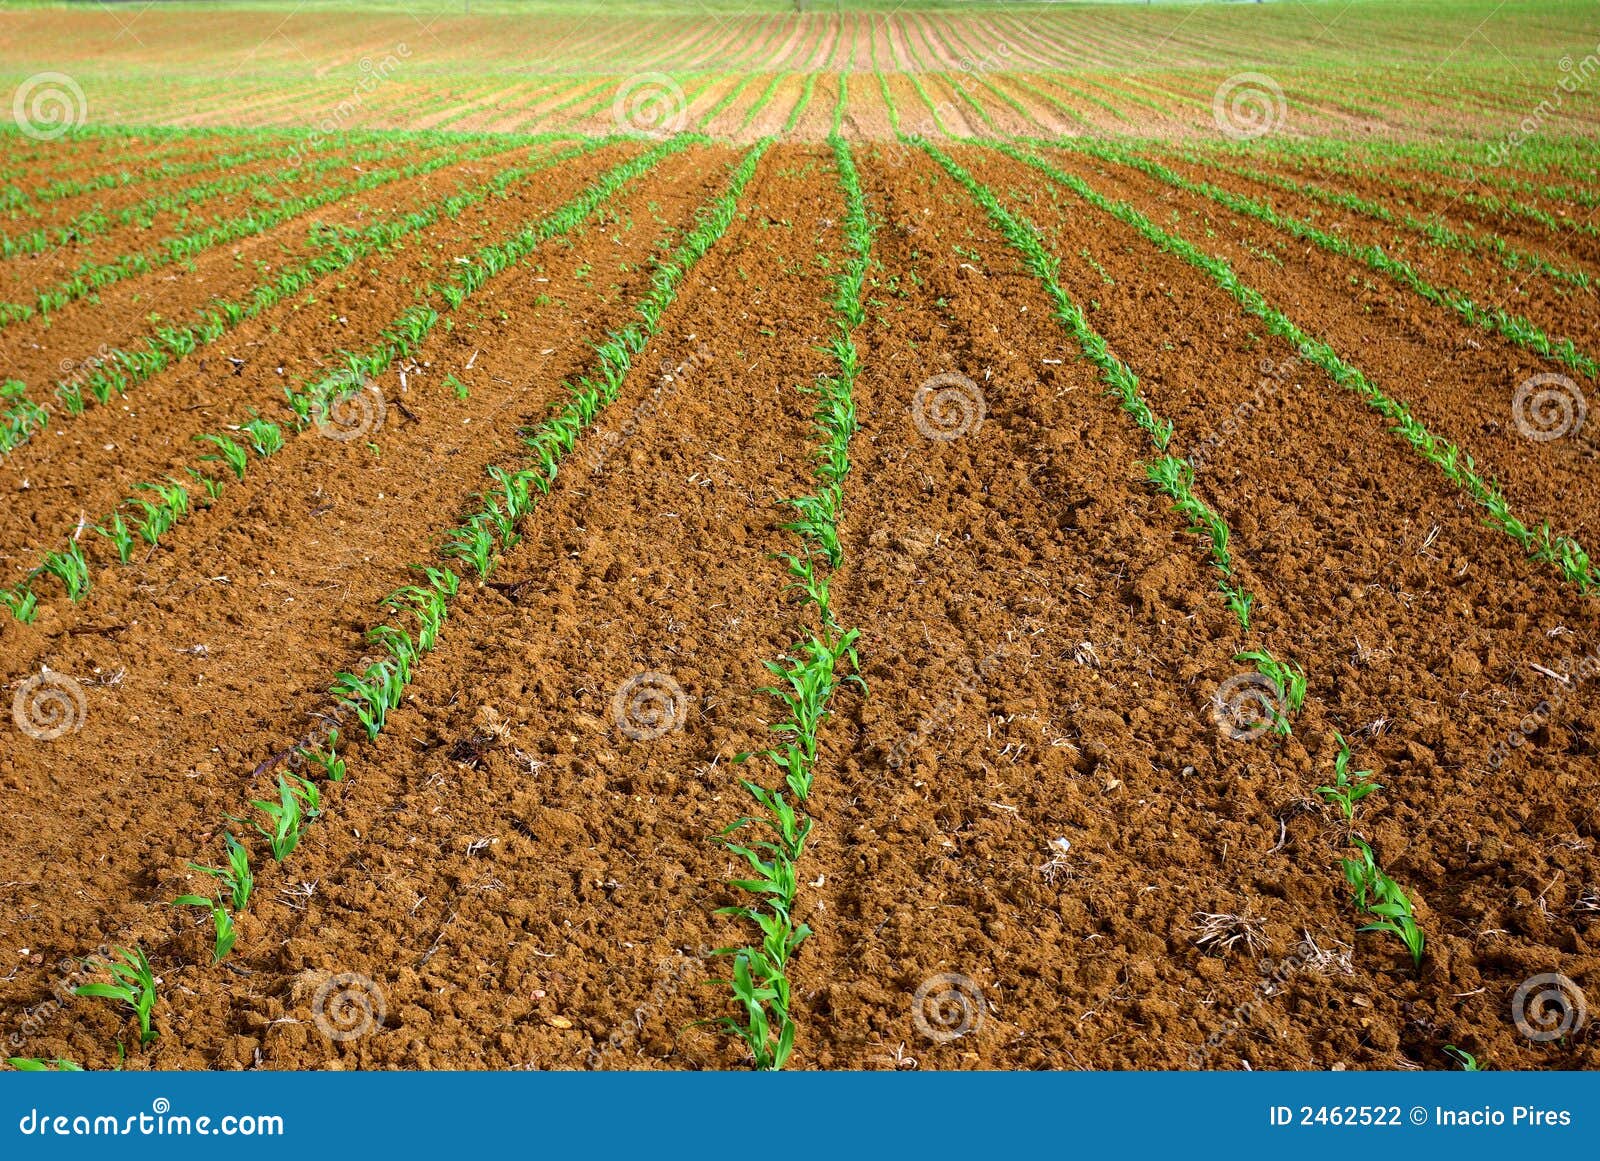 Campo semeado. Campo do milho semeado no sul de Portugal